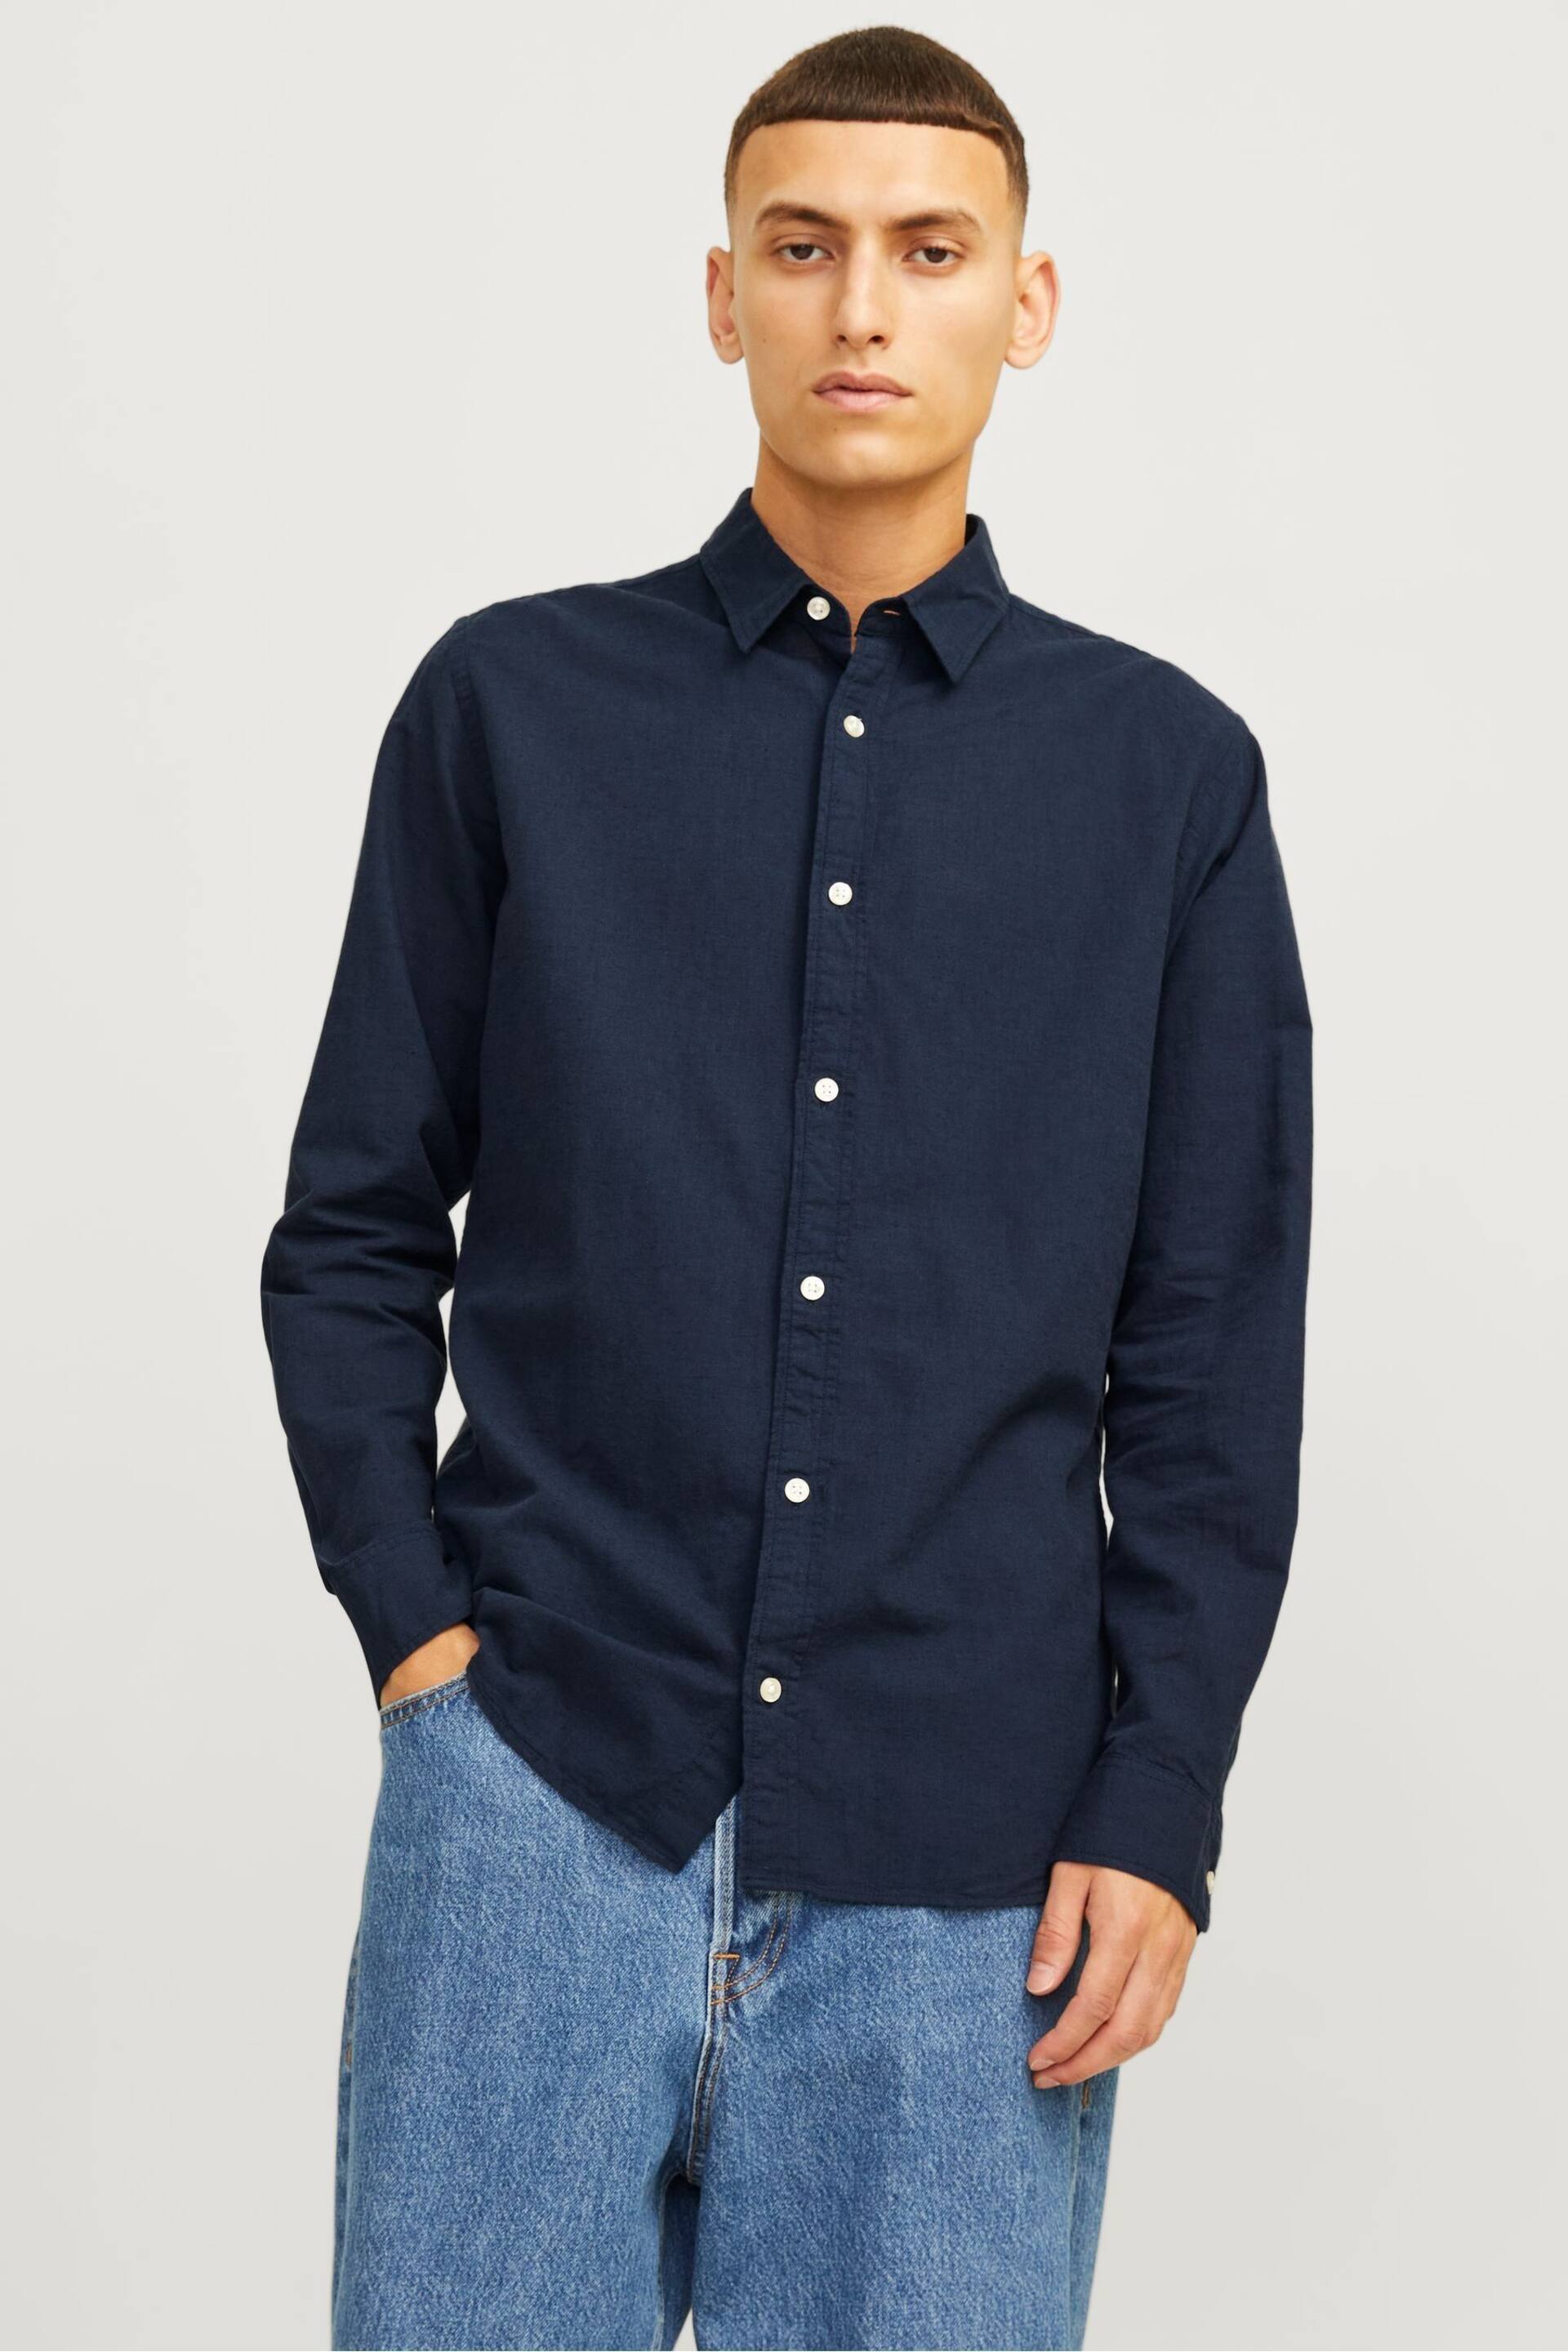 JACK & JONES Blue Linen Blend Long Sleeve Shirt - Image 1 of 1